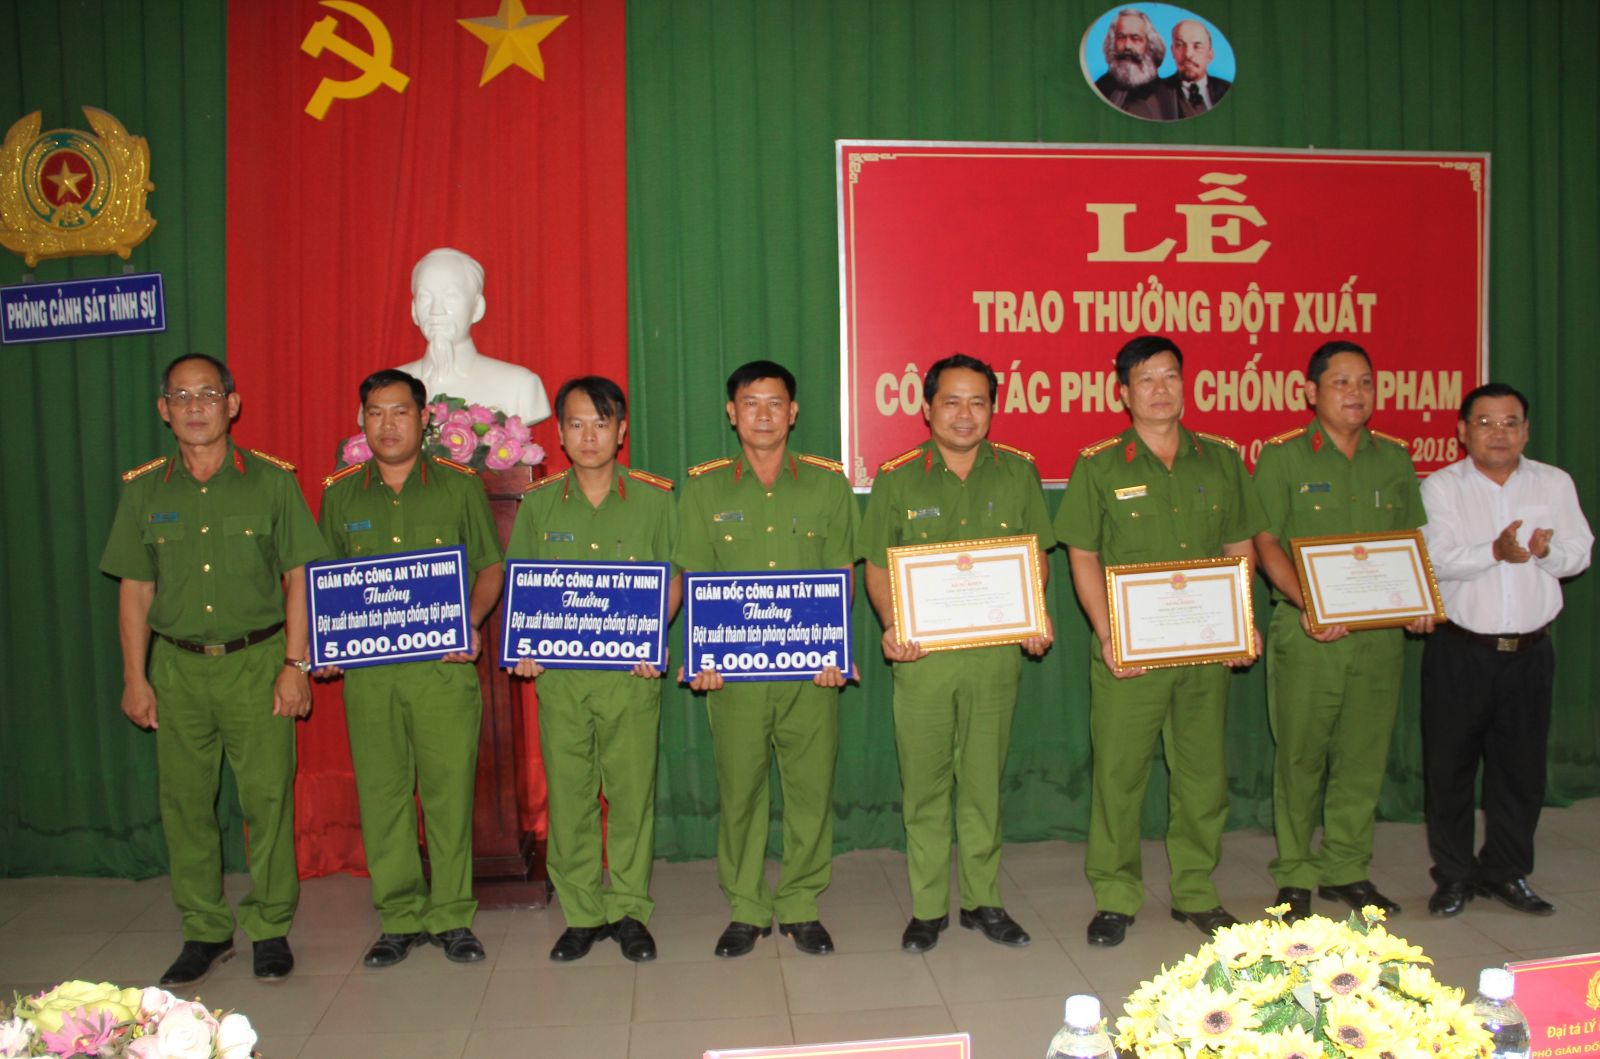 Điểm báo in Tây Ninh ngày 14.11.2018